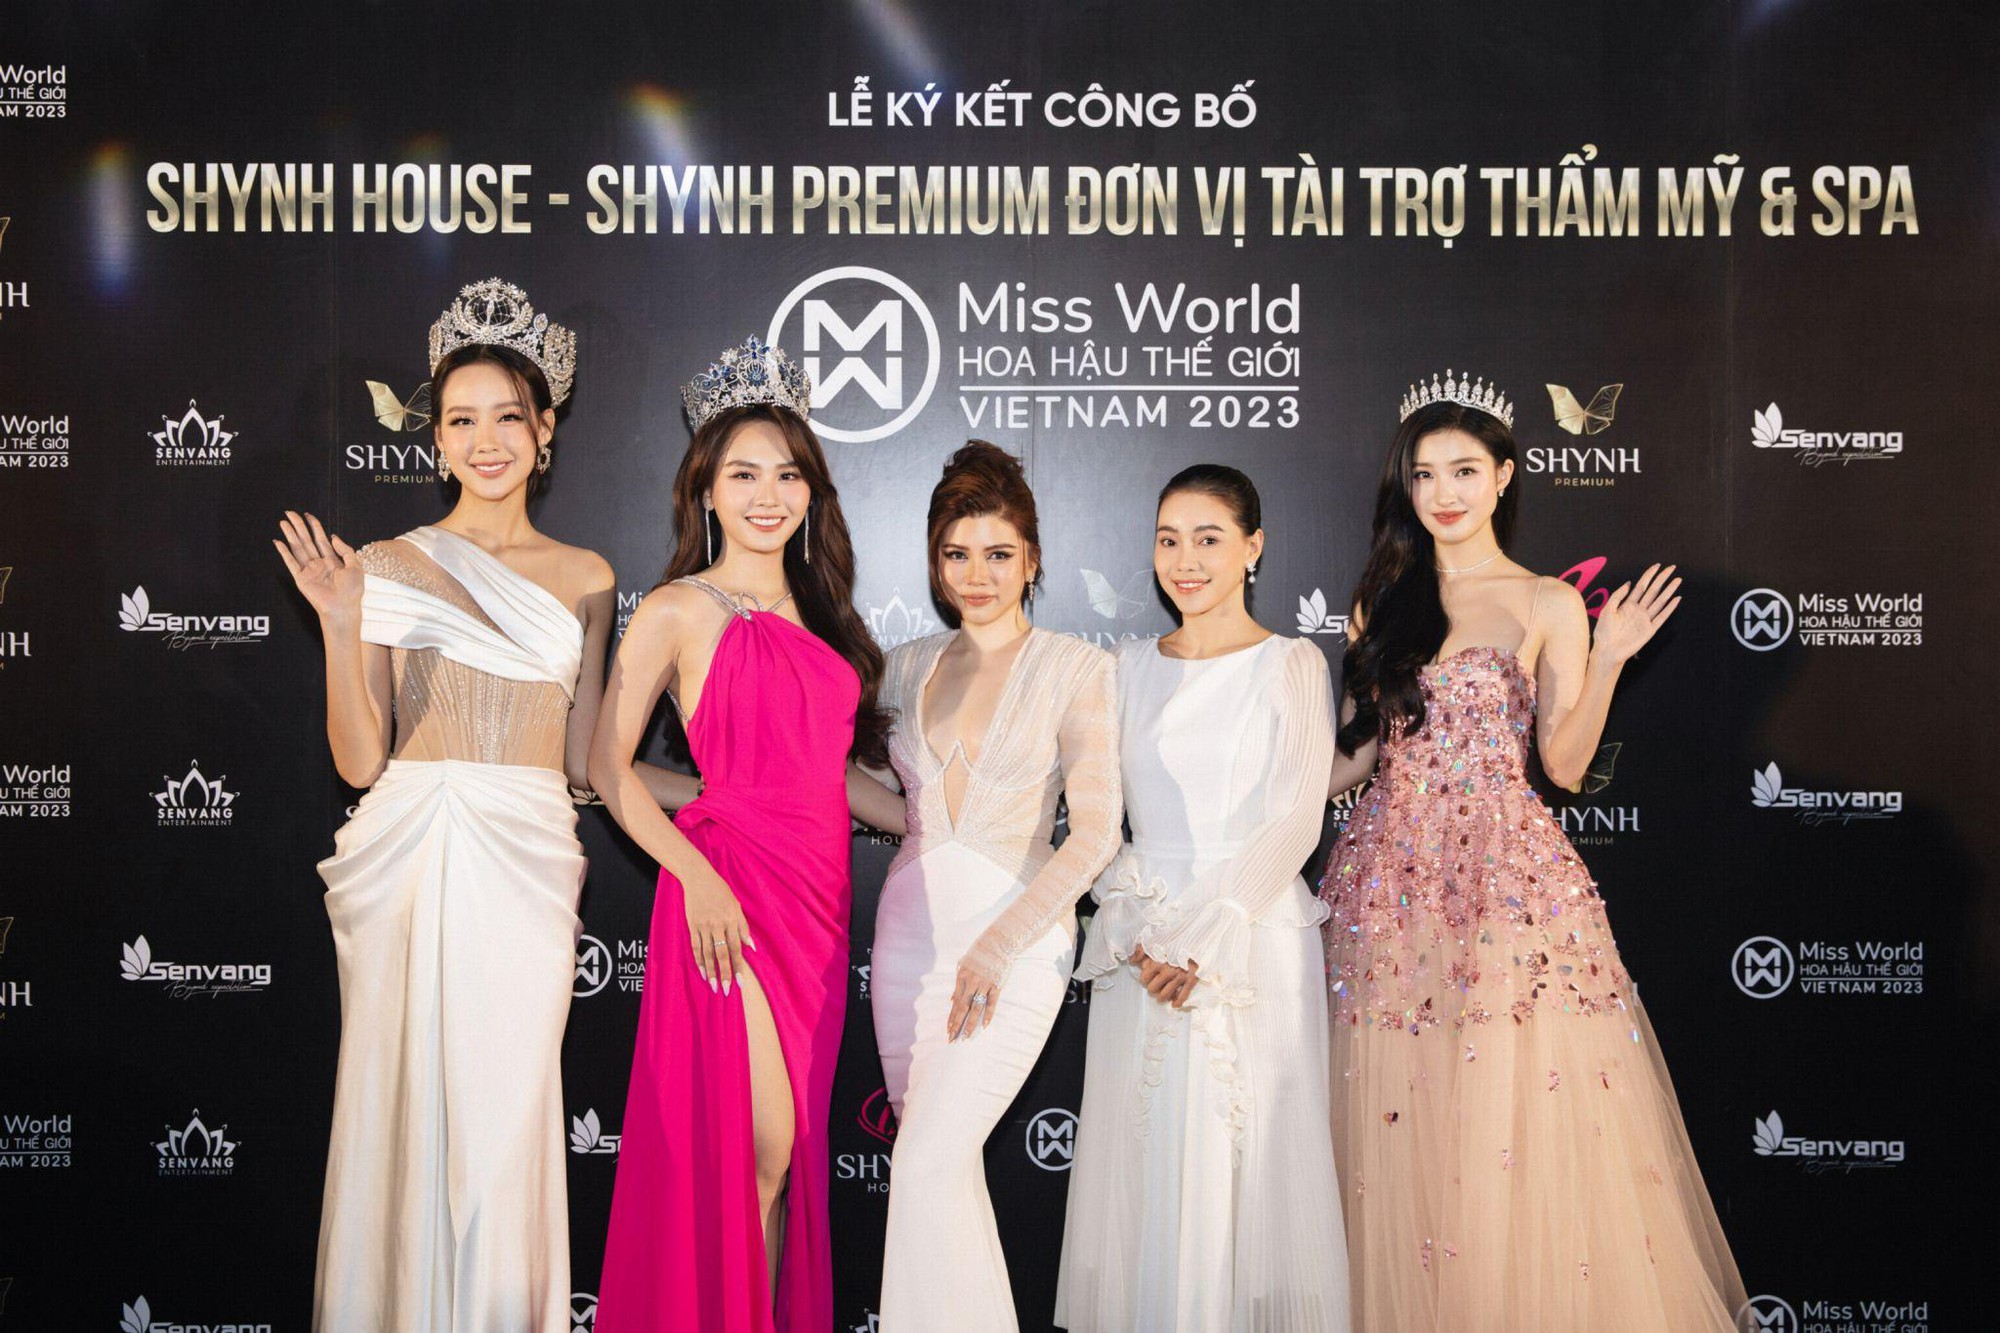 Shynh House - Shynh Premium đồng hành cùng Miss World Vietnam 2023 - Ảnh 5.